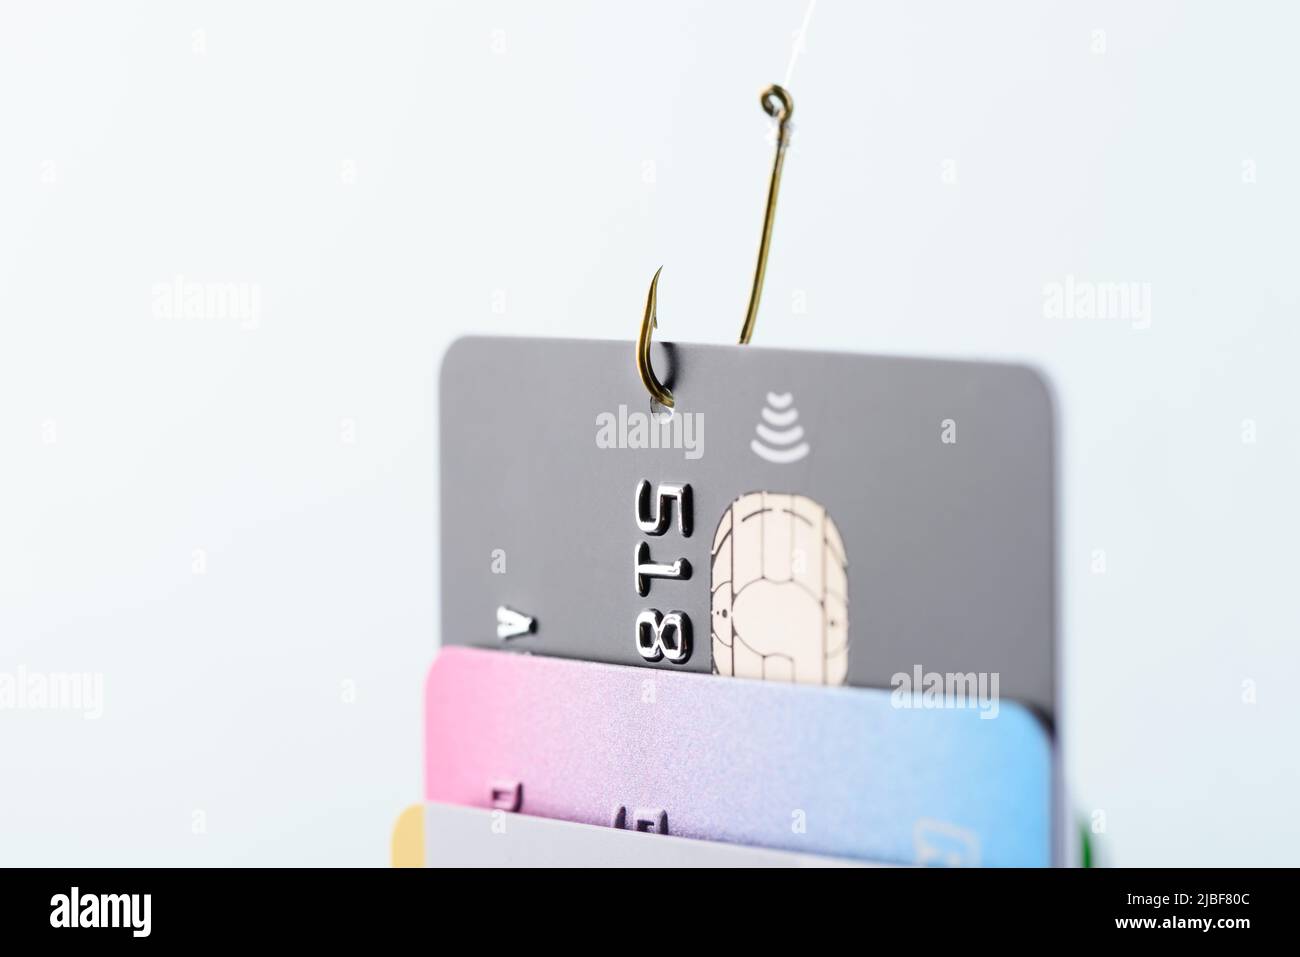 Konzept für Phishing-Betrug mit Kreditkarte. Kreditkartendatendiebstahl, Karte von Hacker-Cyberkriminellen auf Angelhaken gehakt. Stockfoto